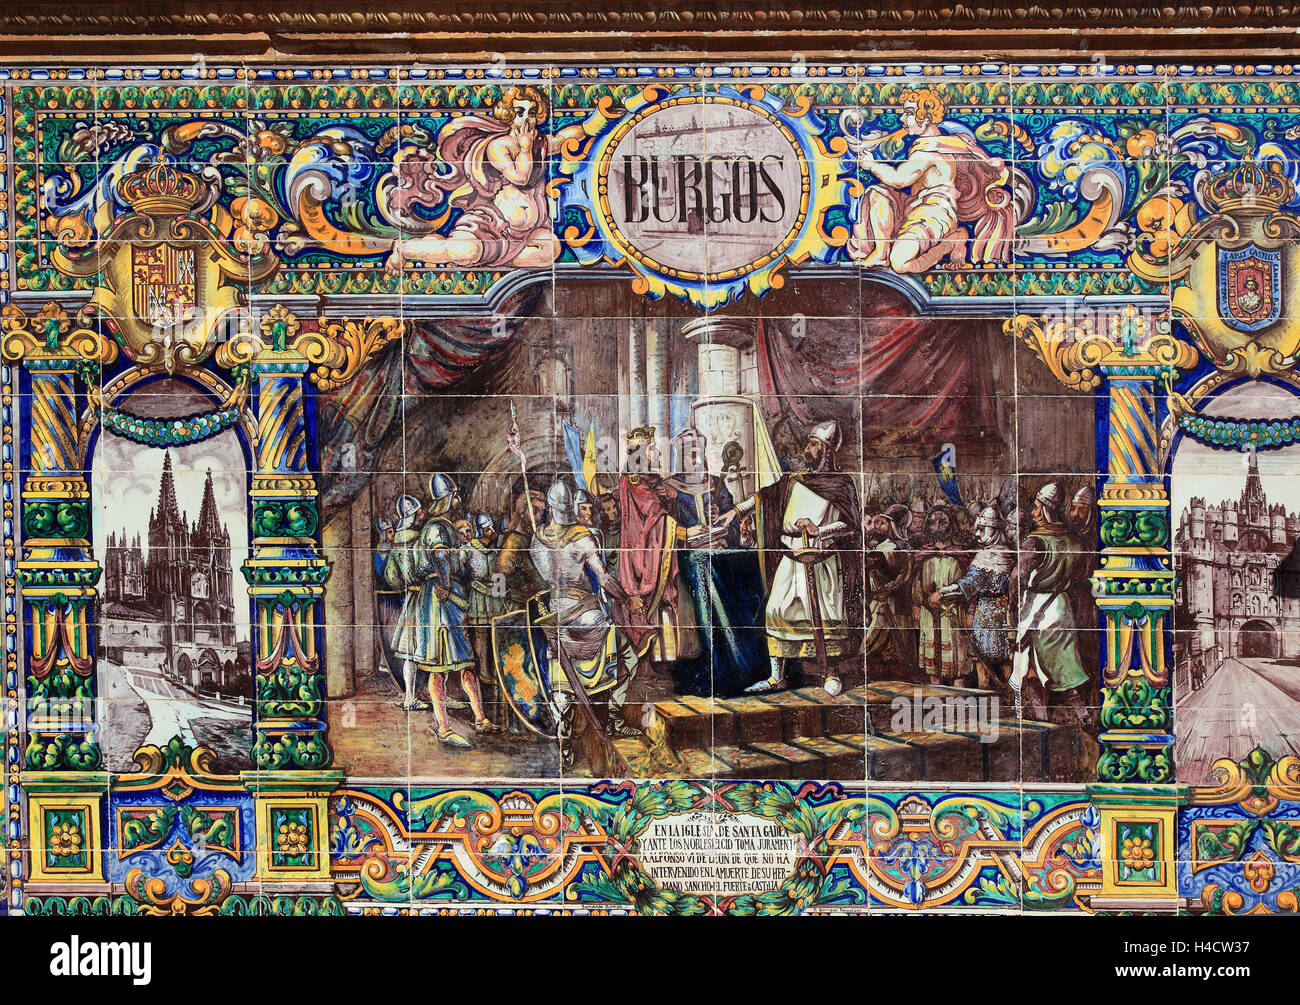 Spanien, Andalusien, Stadt Sevilla, in der Plaza de Espana, Ornamente aus Fliesen, beschreibt die ornamentale Kunst welche gegenwärtigen 48 Provinzen Spaniens, hier Burgos, Karten der Provinzen, Mosaike historische Ereignisse Stockfoto